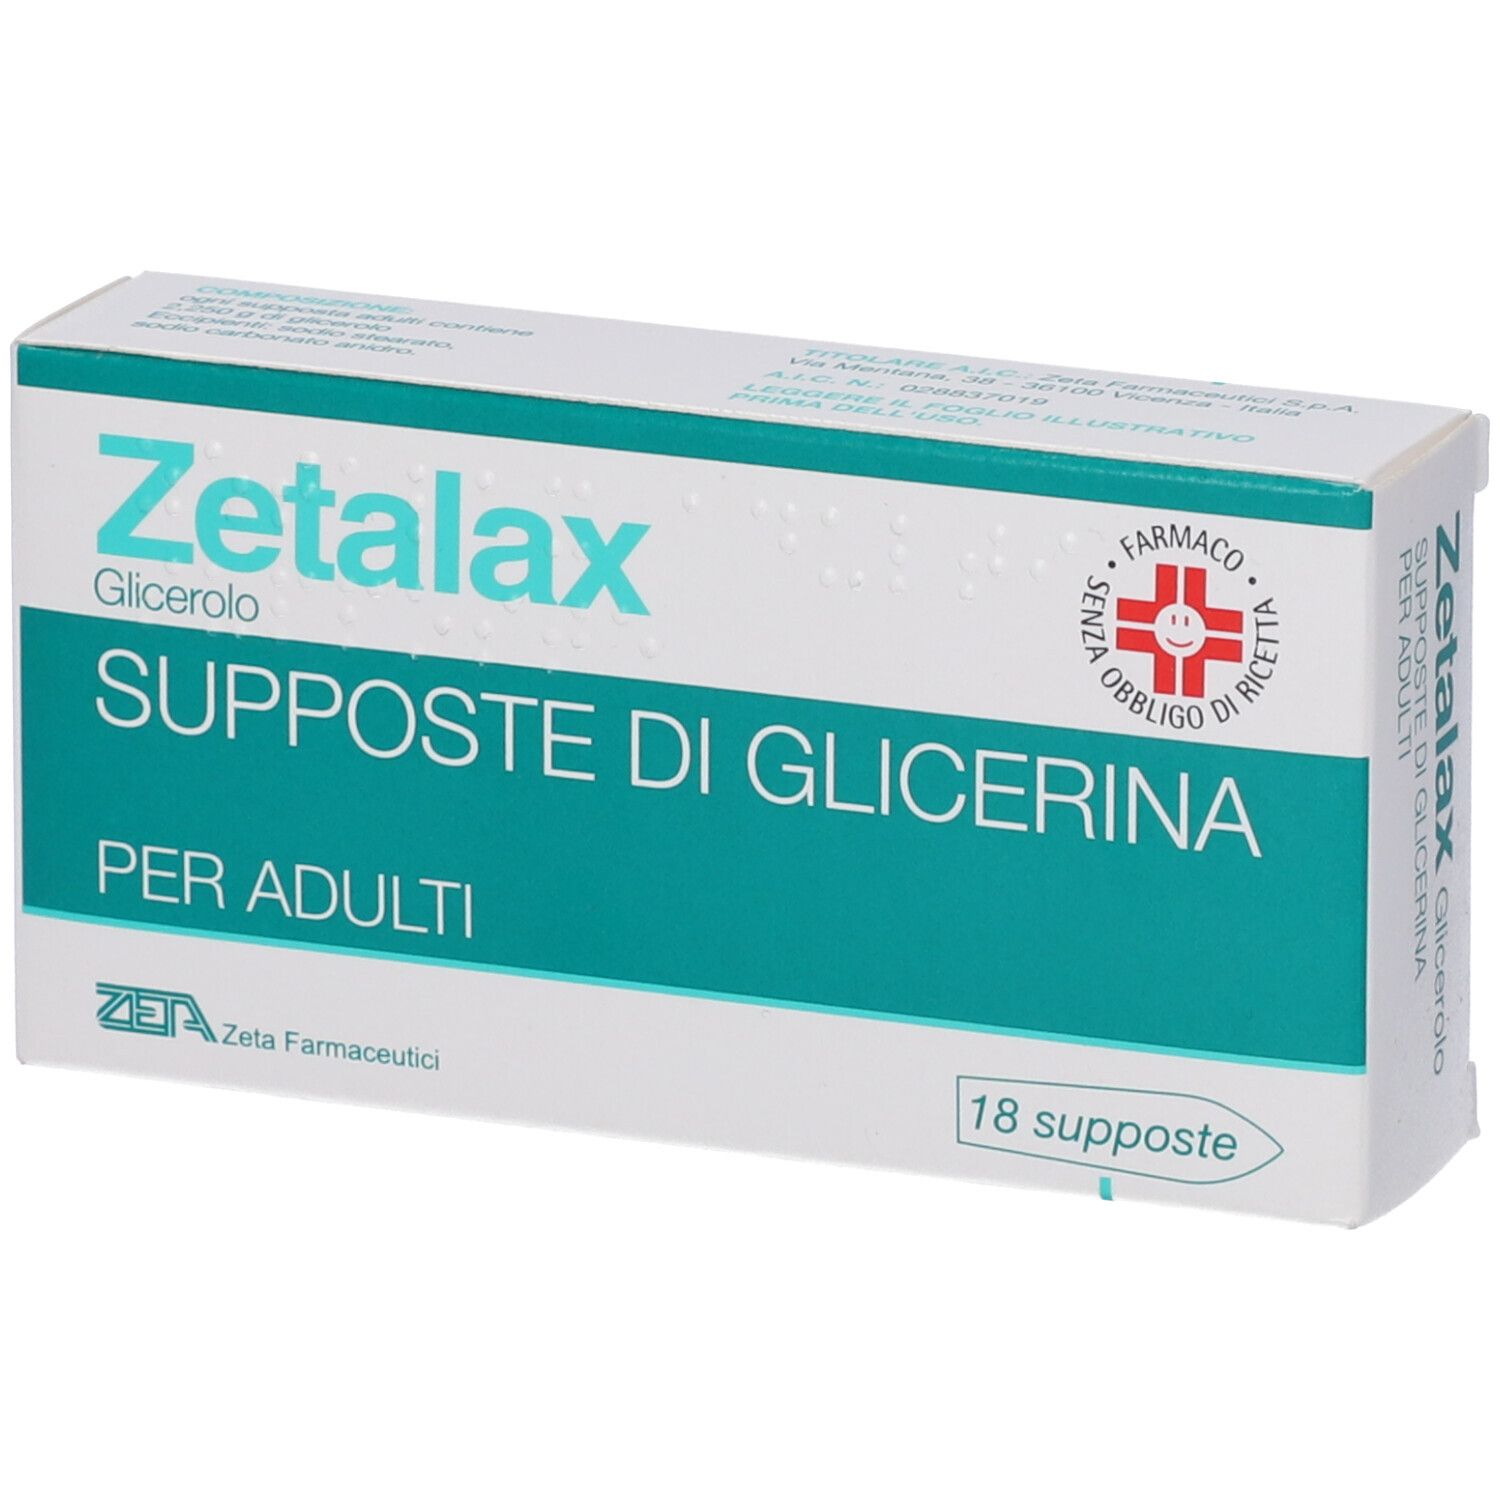 Zetalax Supposte di Glicerina per Adulti